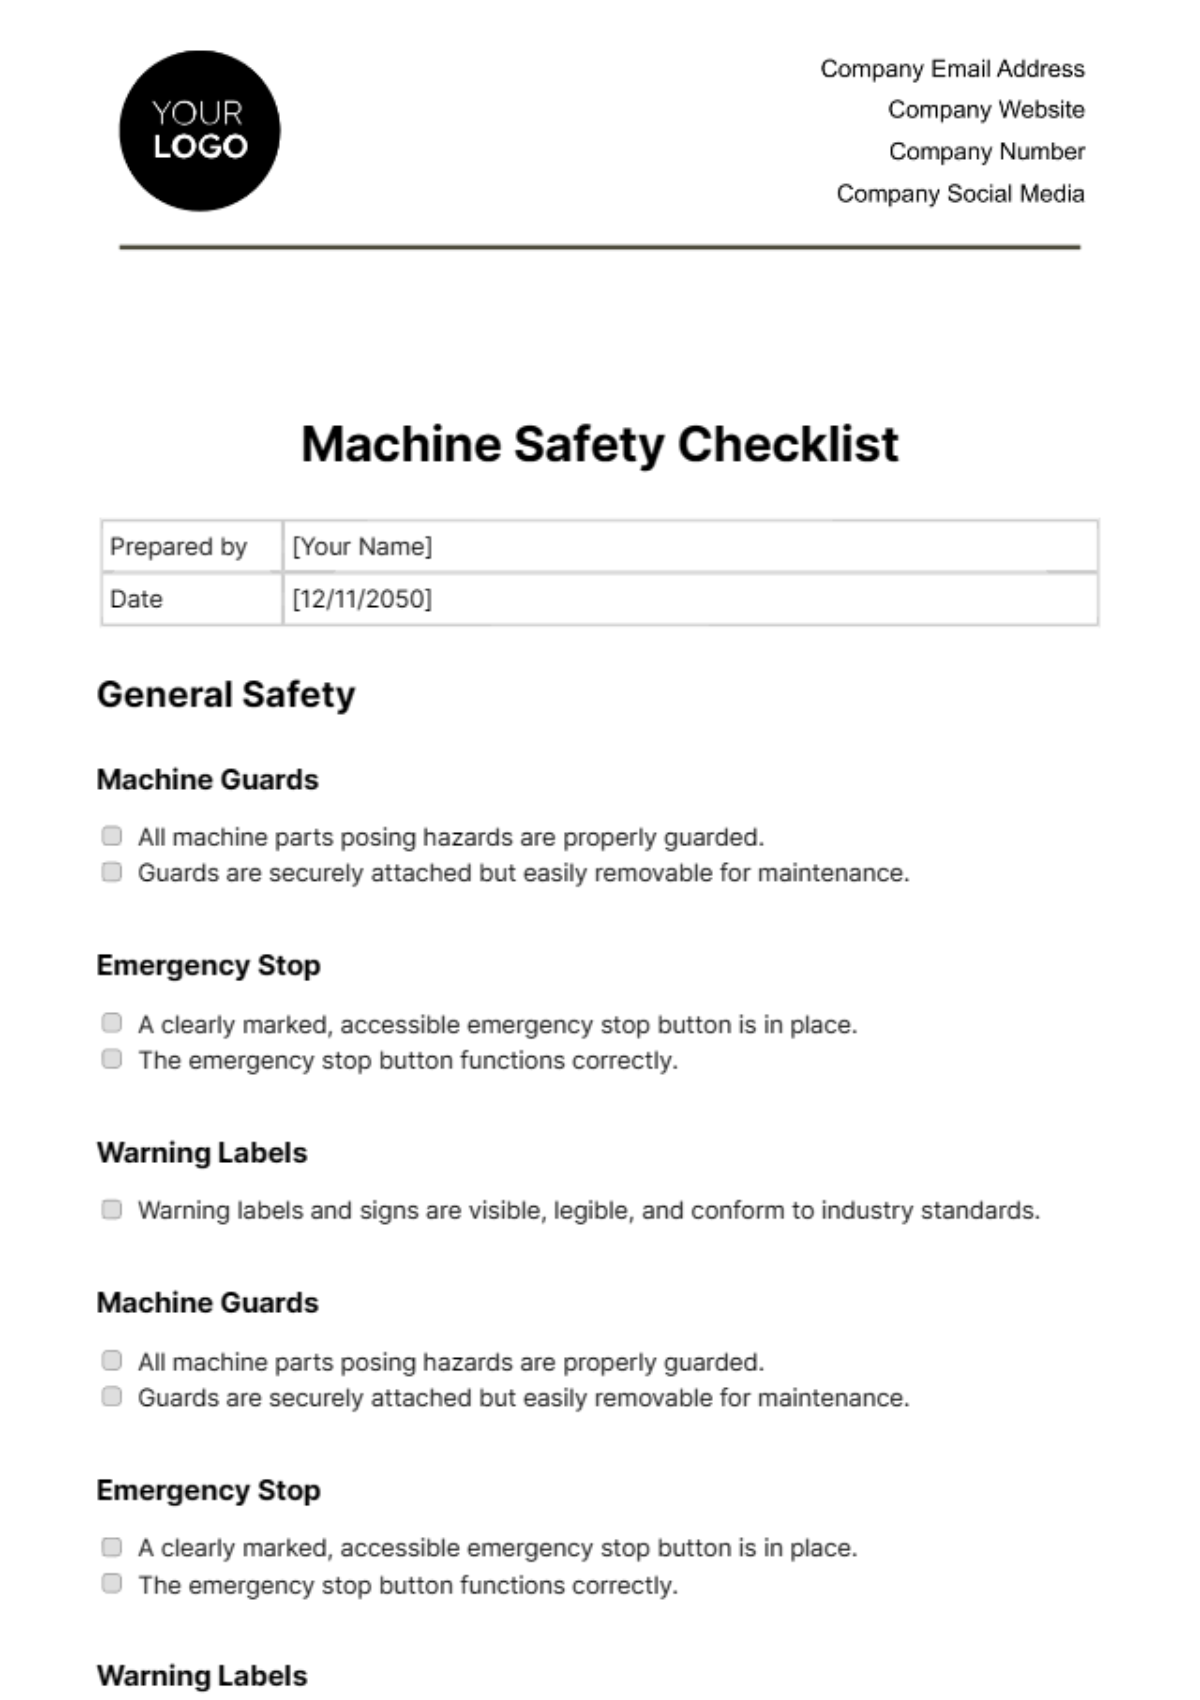 Machine Safety Checklist Template